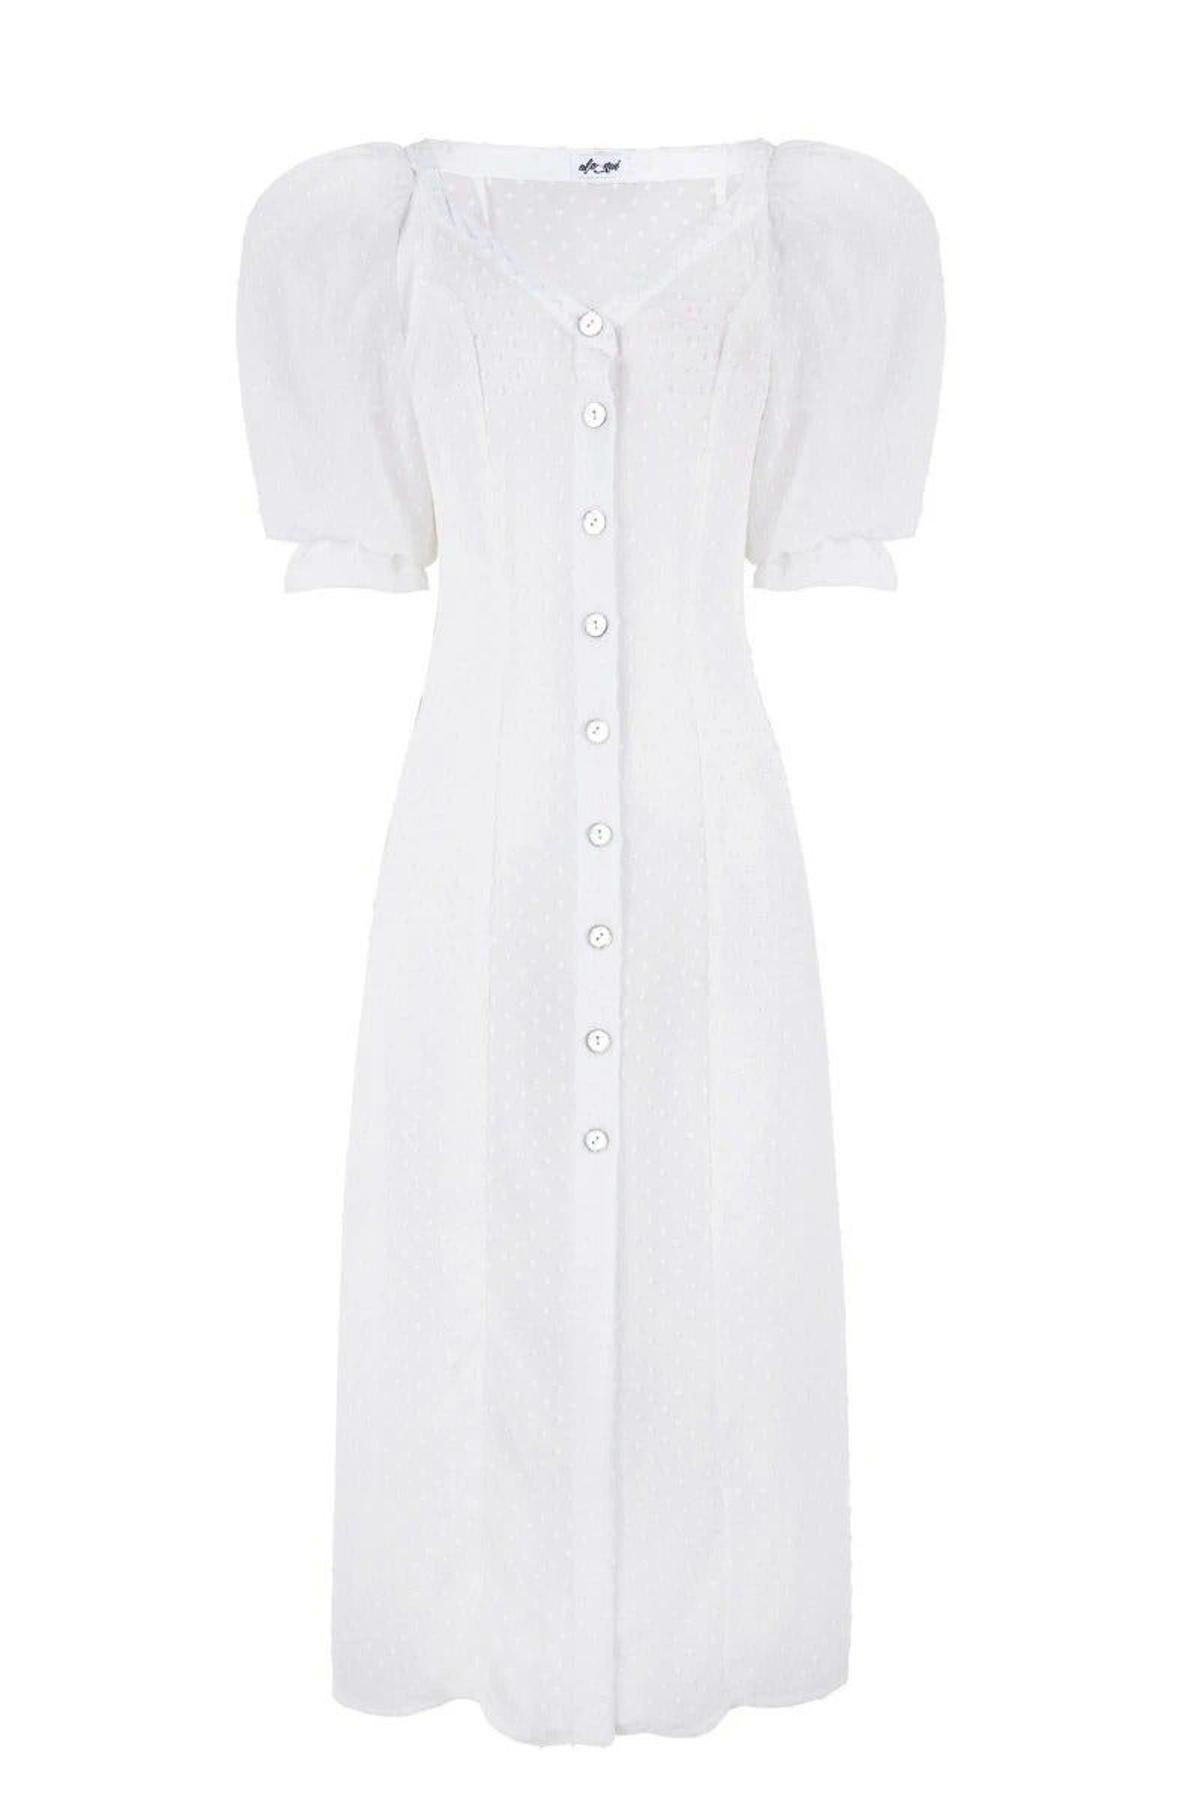 Vestido plumetti blanco, de Alo Nui (199 euros)